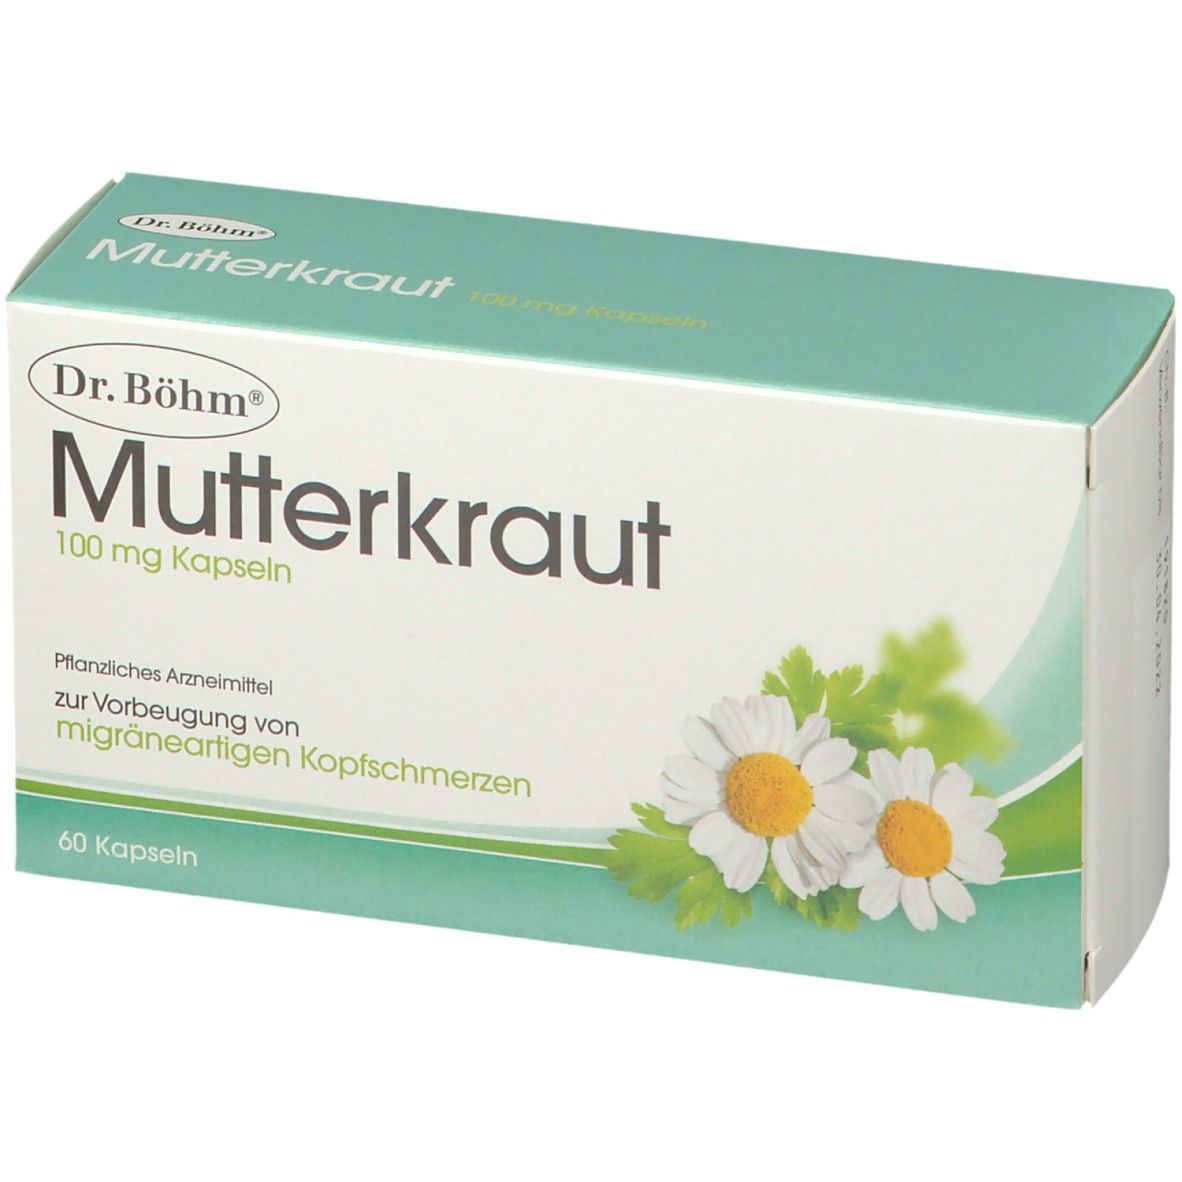 Dr. Böhm® Mutterkraut 100 mg